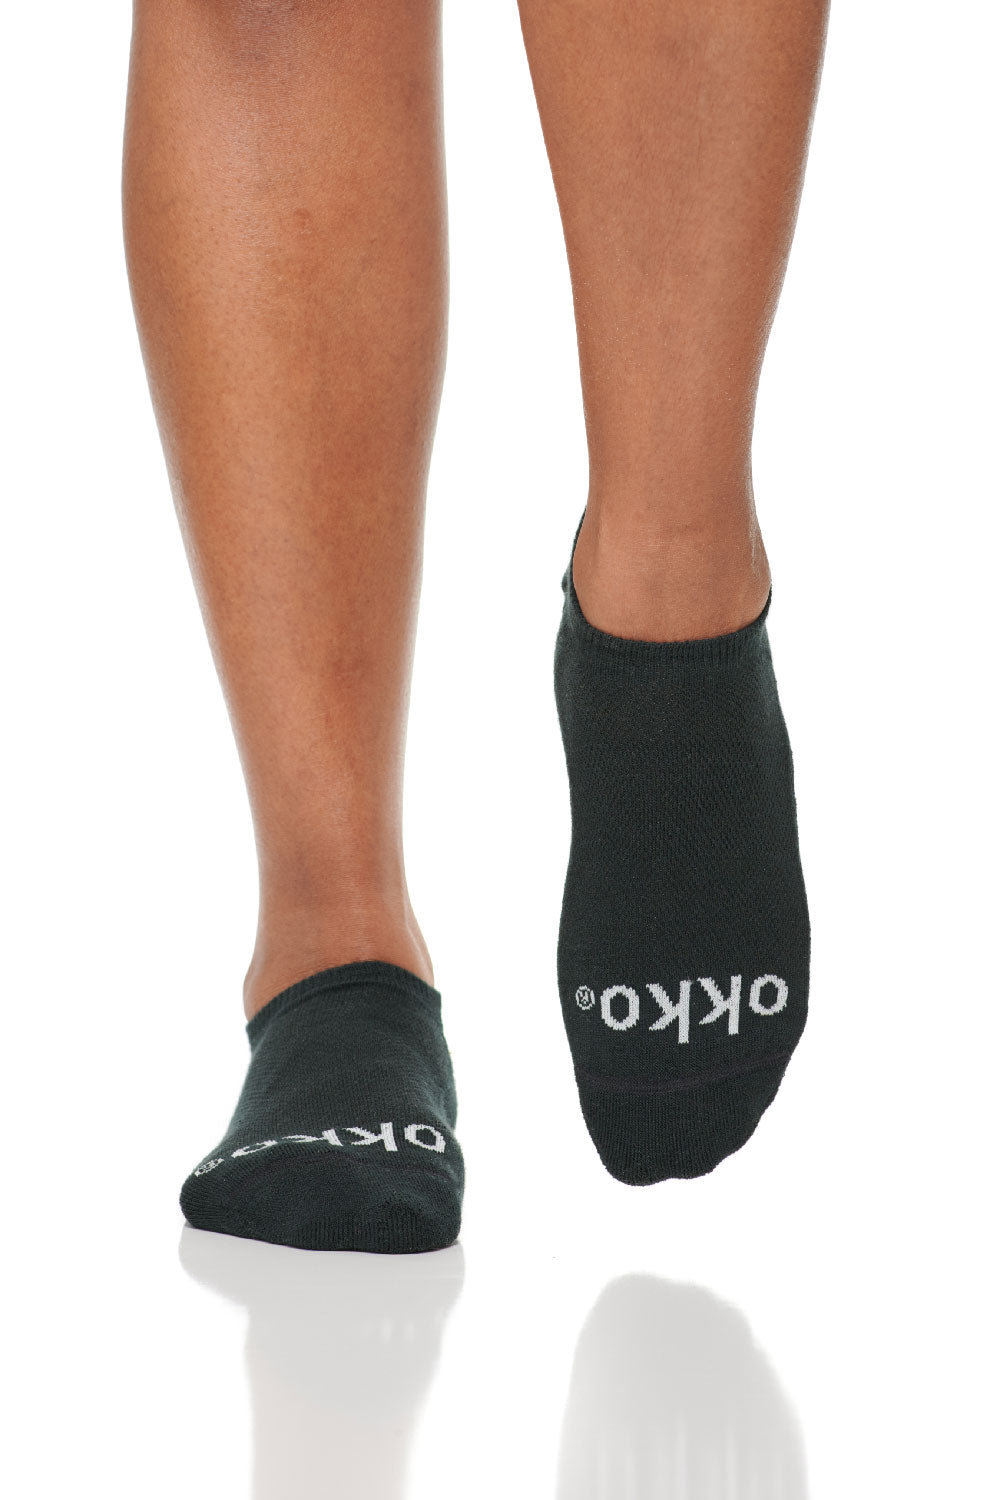 okko low-cut socks in onyx